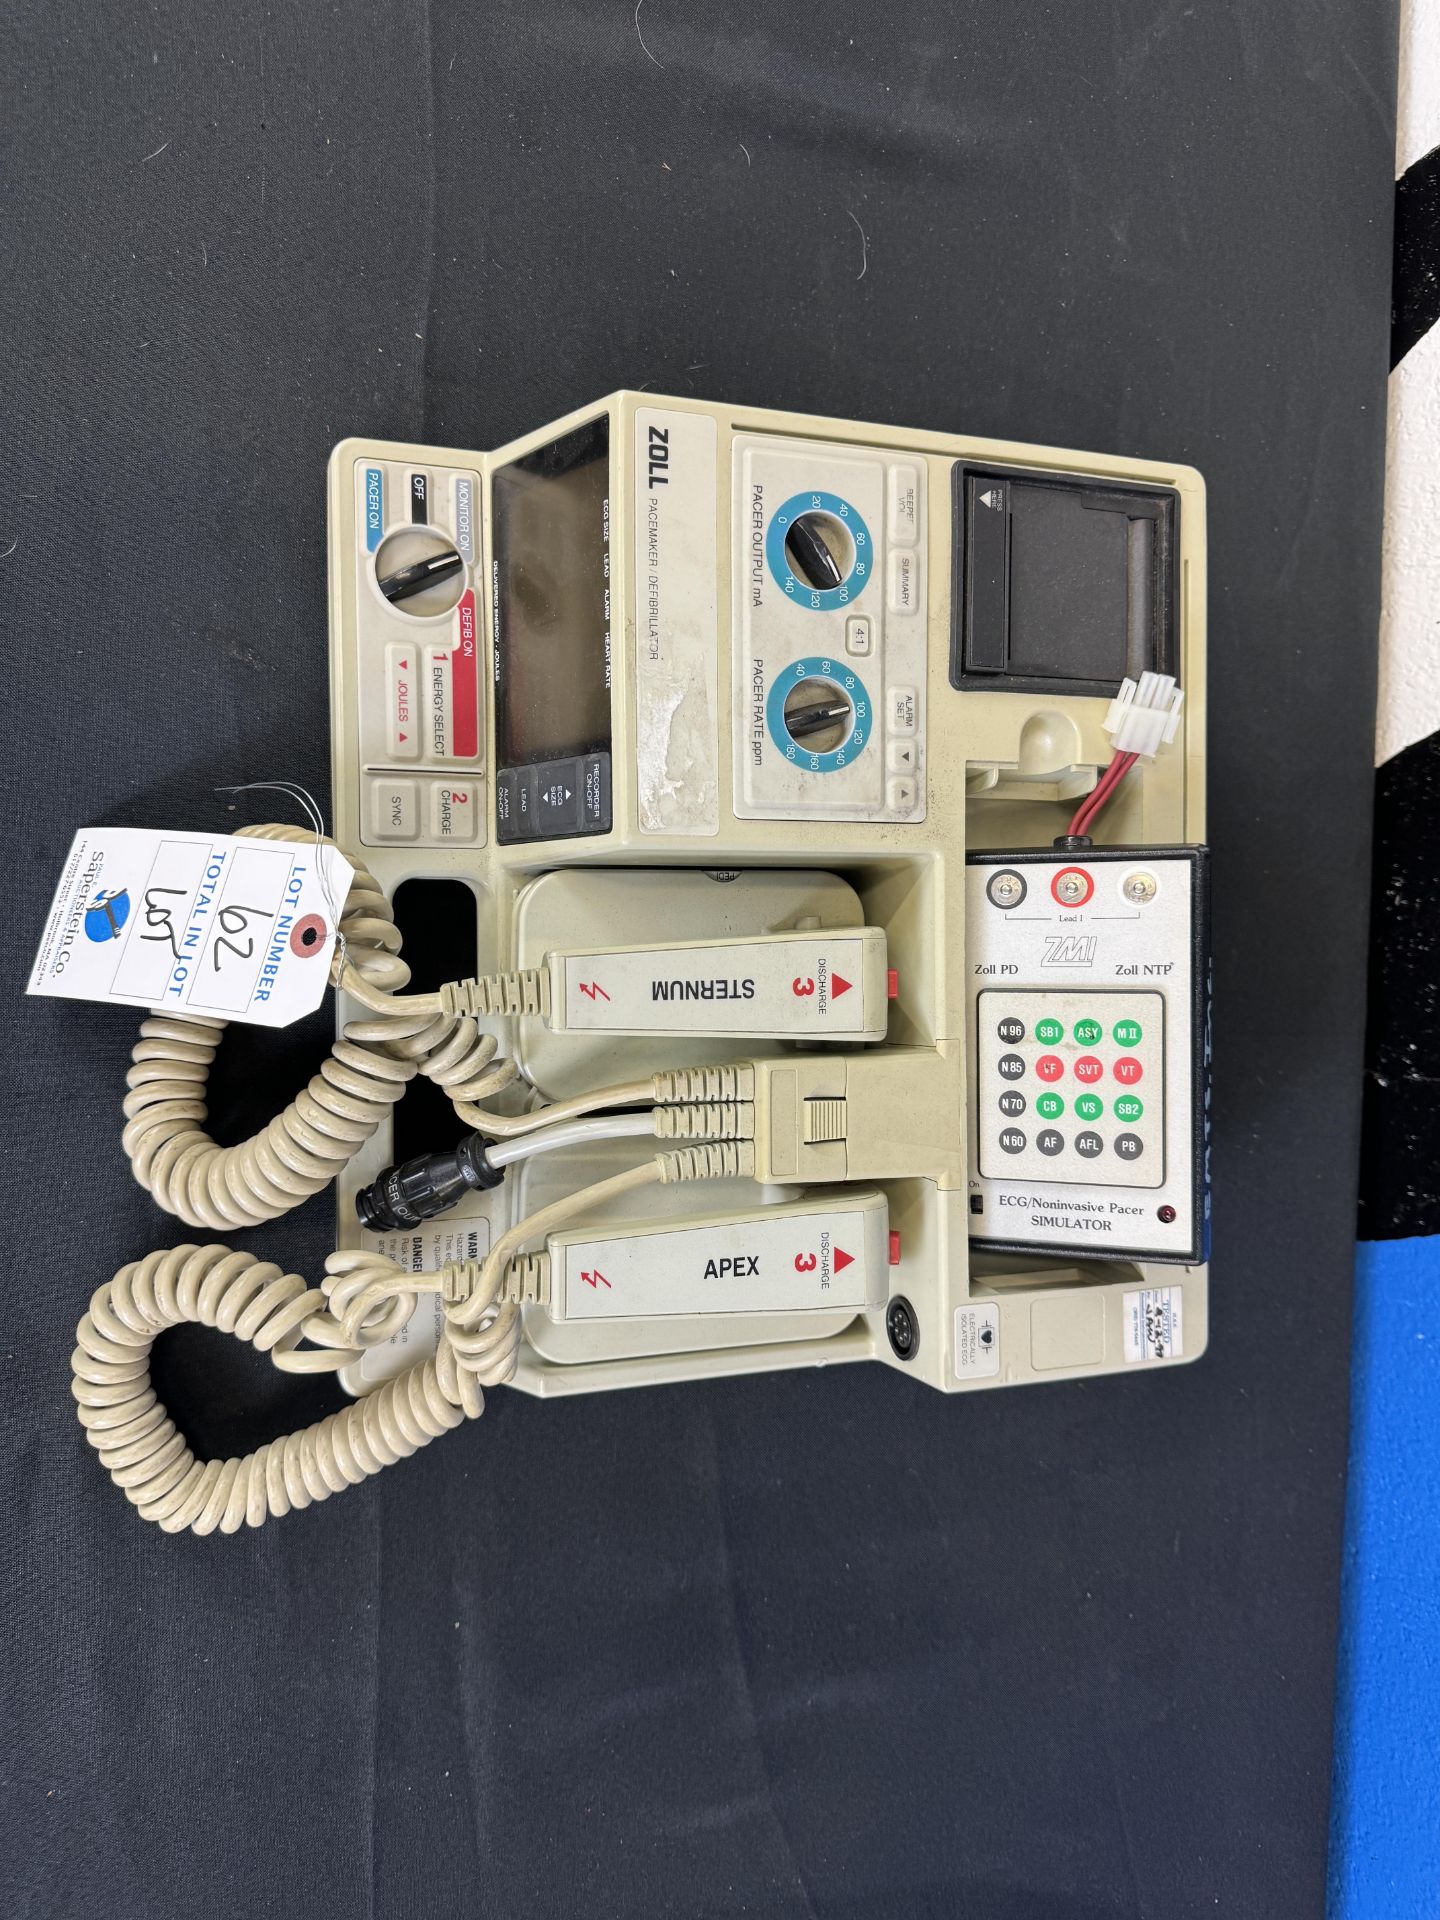 Zoll Pace Maker Defibrillator w/ Accessories - Bild 3 aus 3